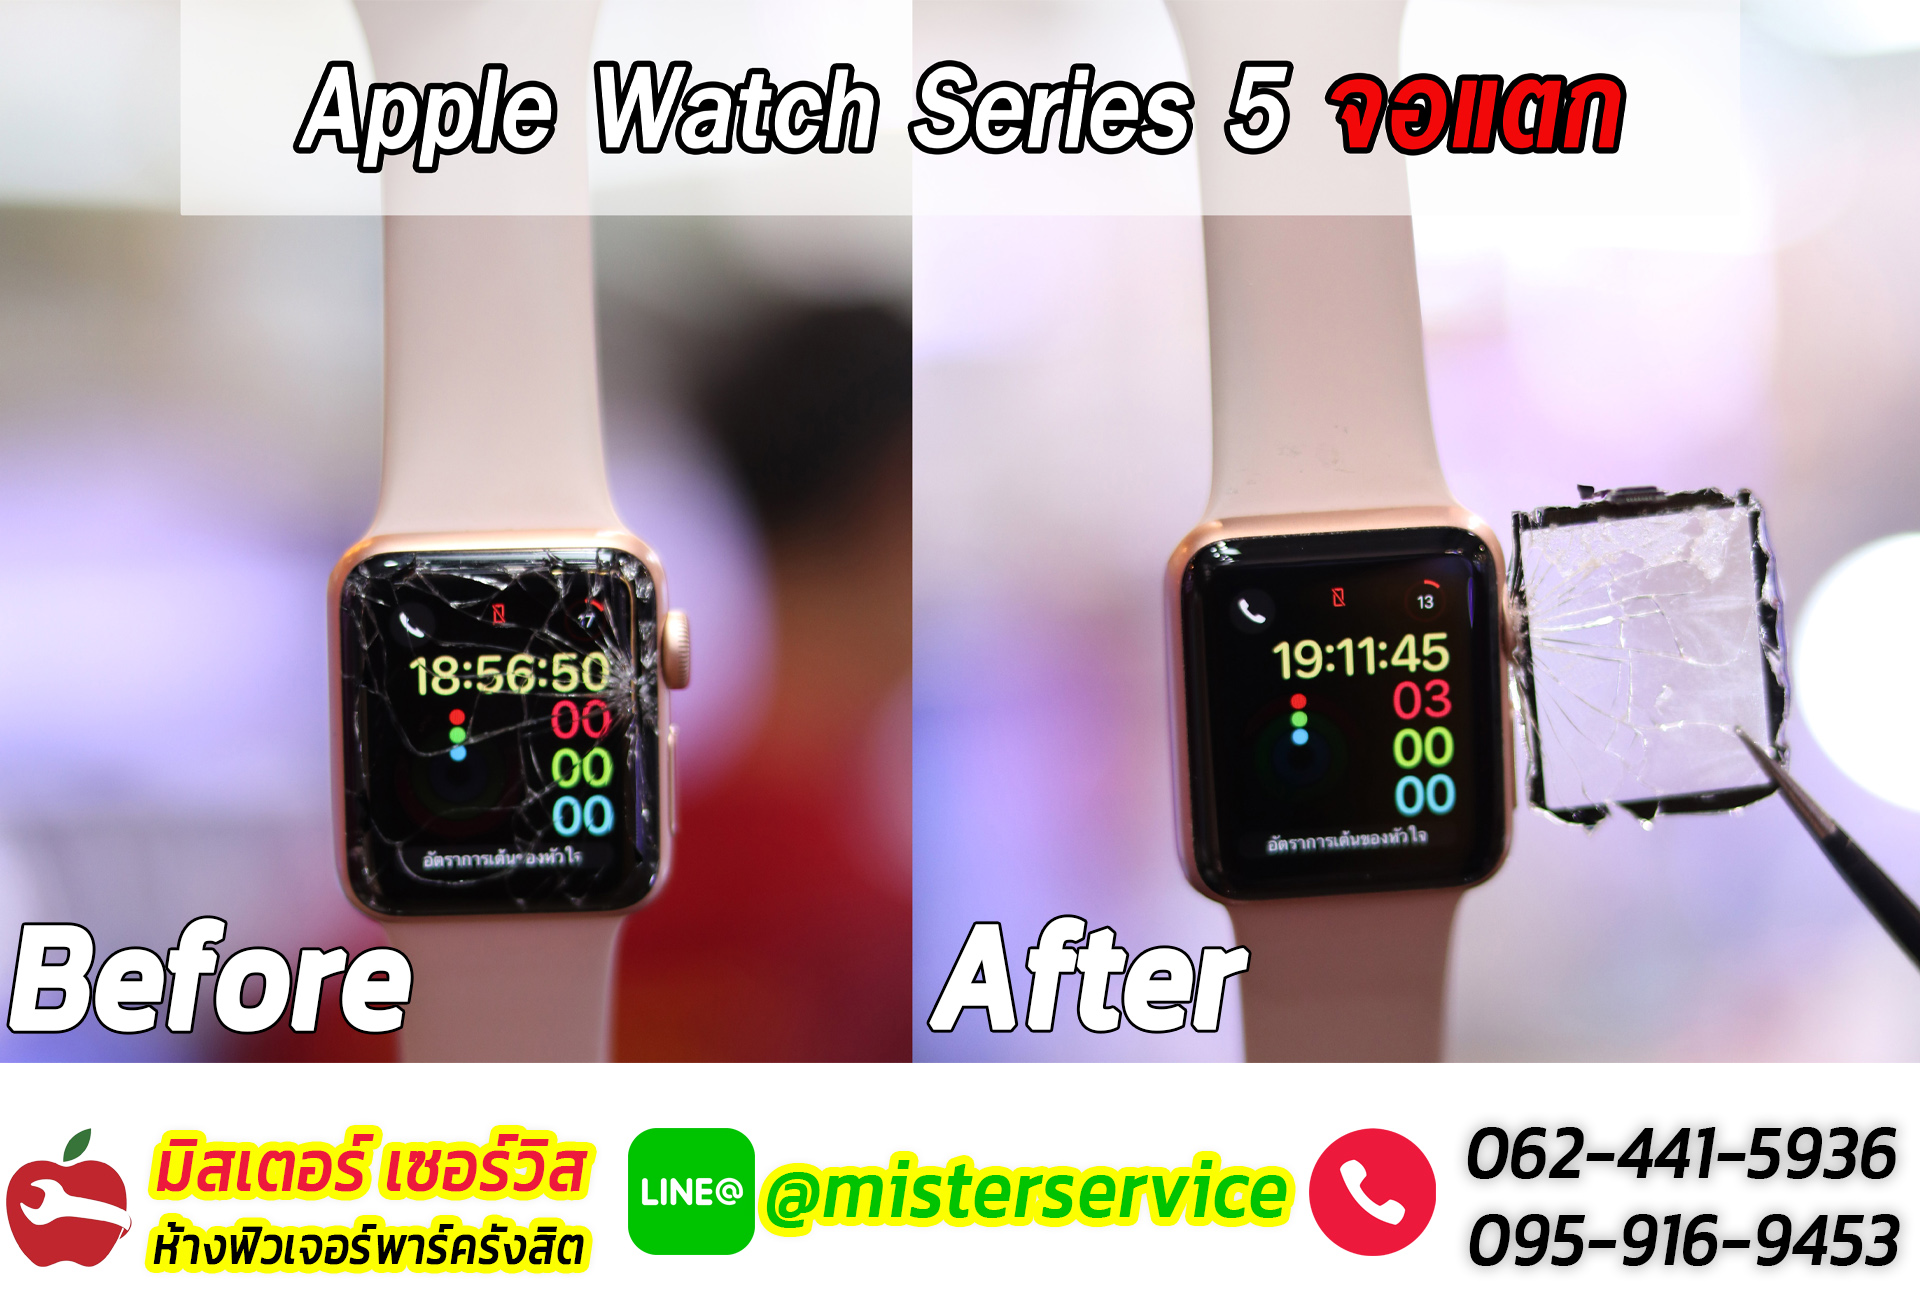 ซ่อม Apple Watch พิจิตร